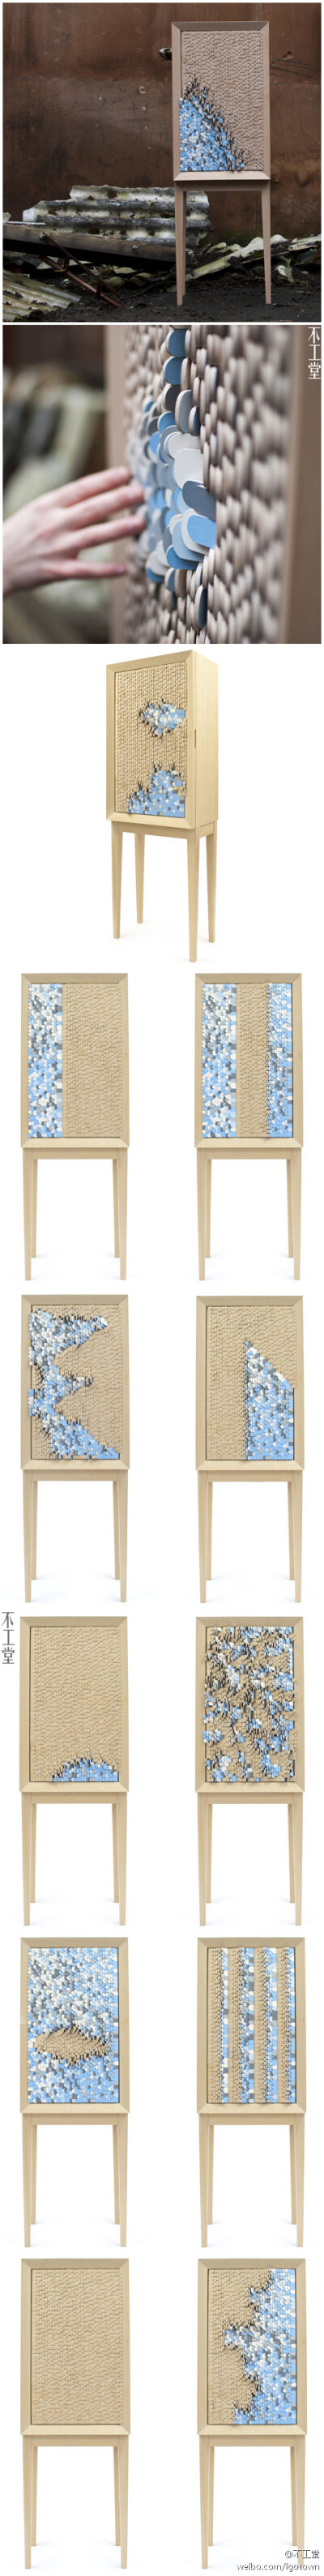 瑞典设计师Jenny Ekdahl设计了这款名为Dear Disaster的柜子，上面安置了四千片可翻转的木片，木片一面保持本色，另一面则被漆成蓝、白以及灰色，翻转木片，就仿佛海浪拂过沙滩一样。据说设计者初衷是为抚慰自然灾害…